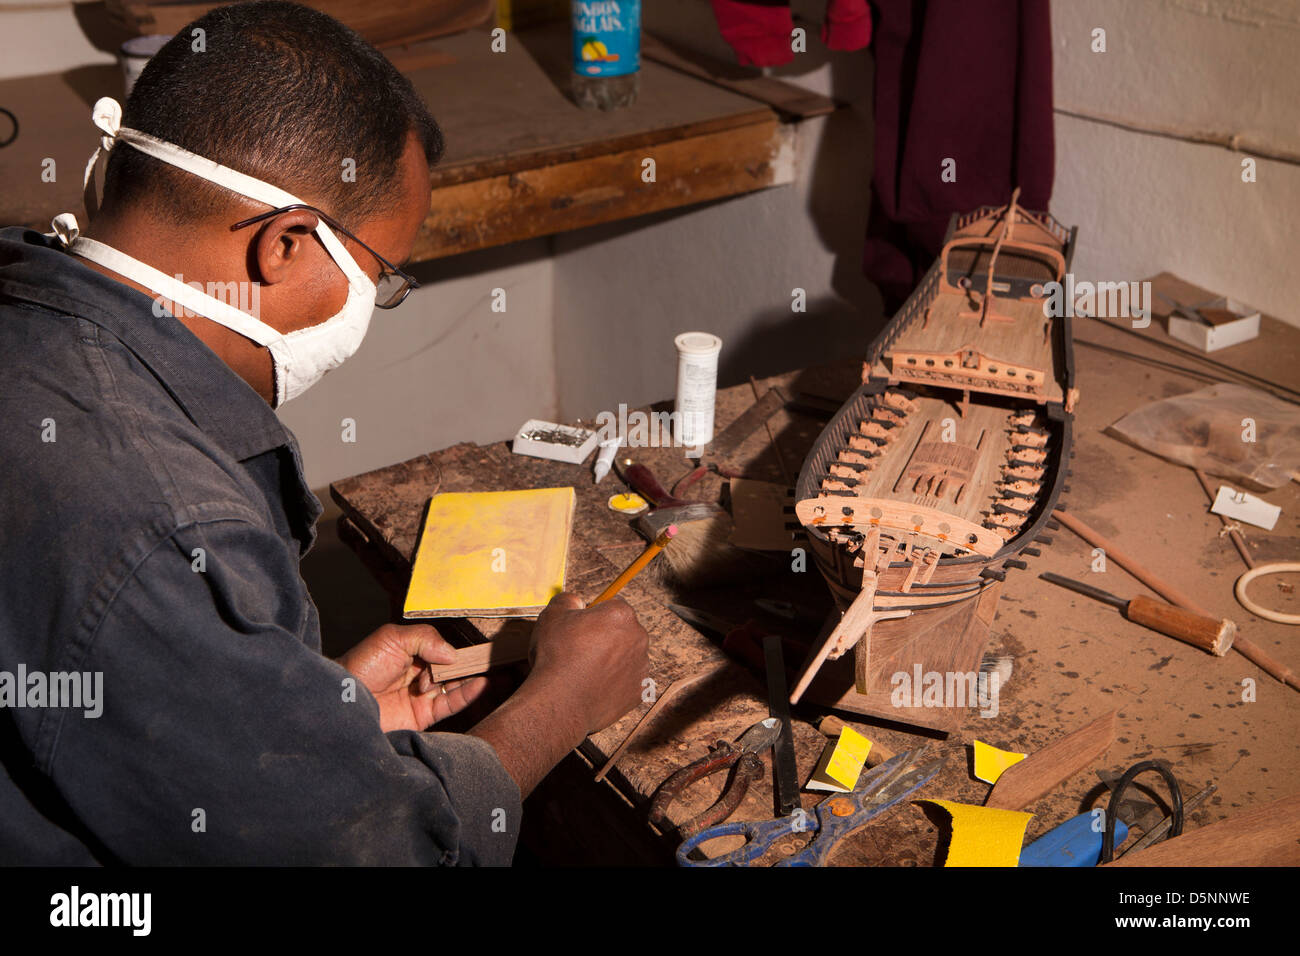 Madagascar, Antananarivo, de l'artisanat, le village miniature, atelier d'artisan Banque D'Images